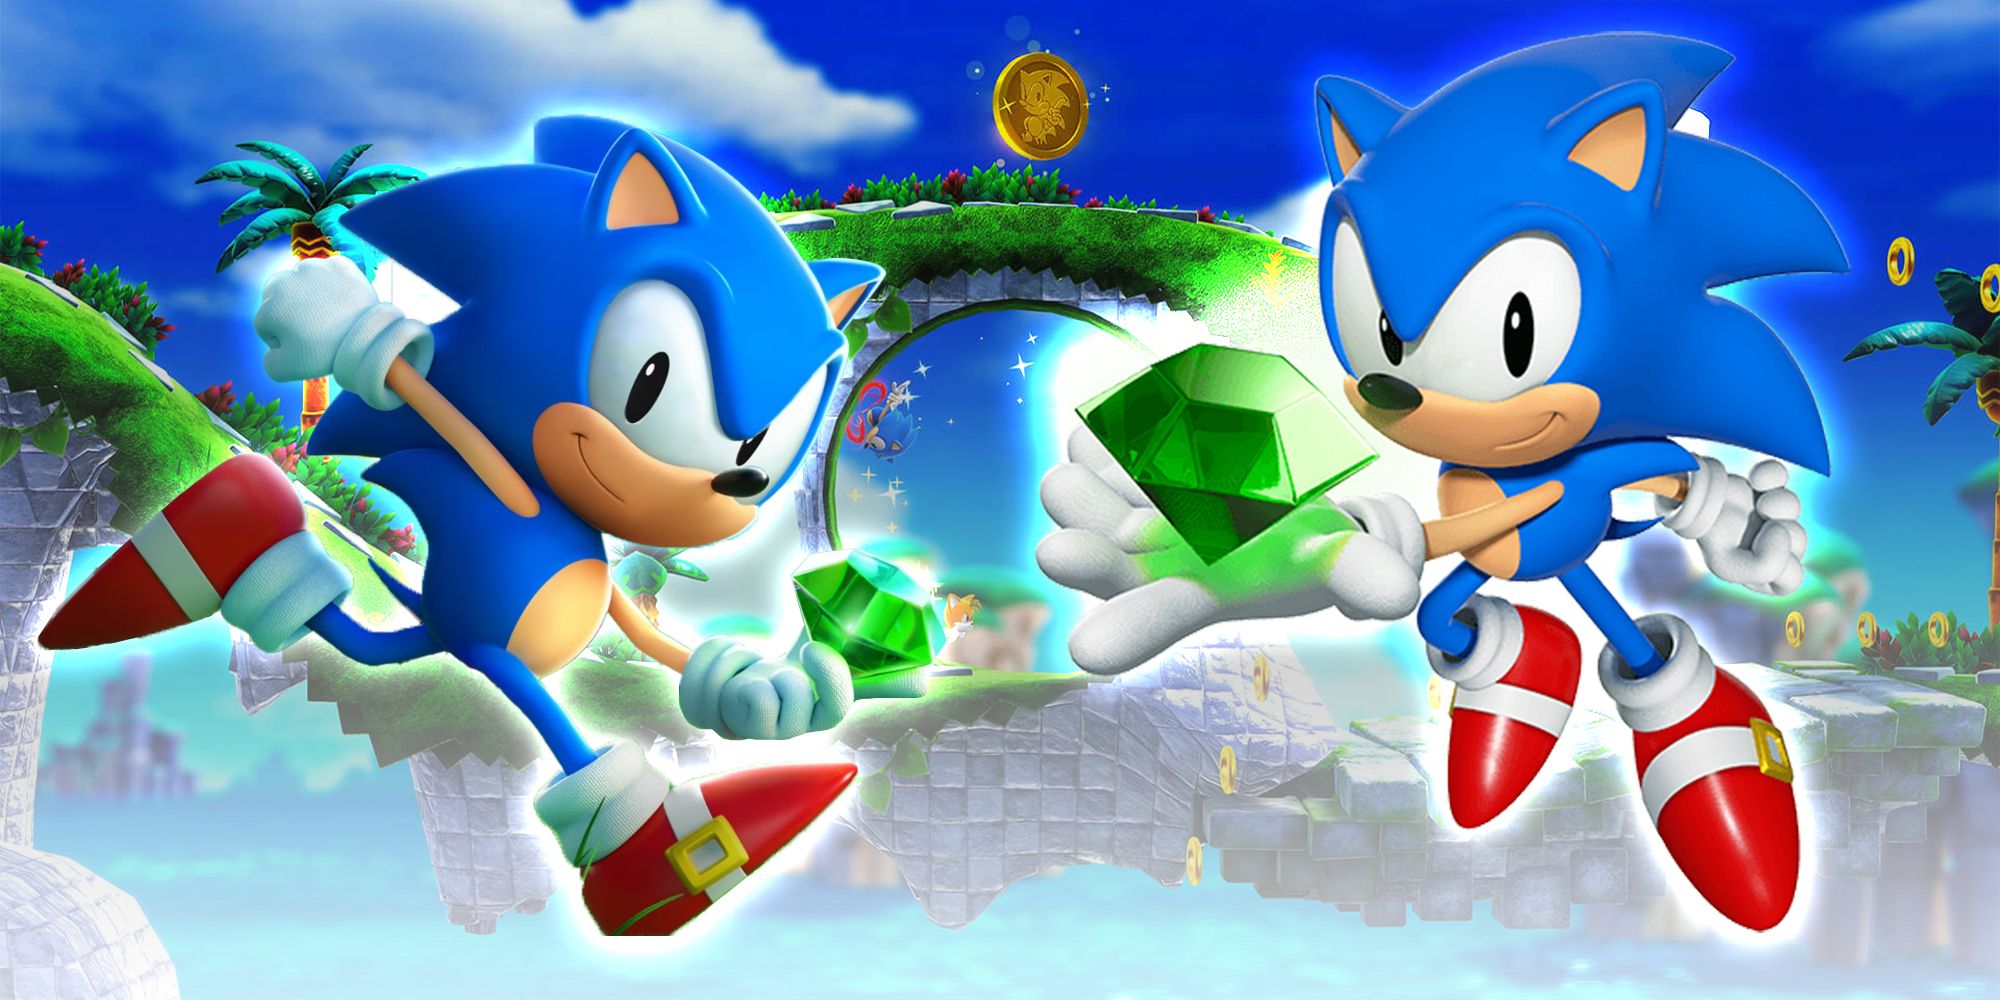 Todos los elementos y personajes desbloqueables en Sonic Superstars